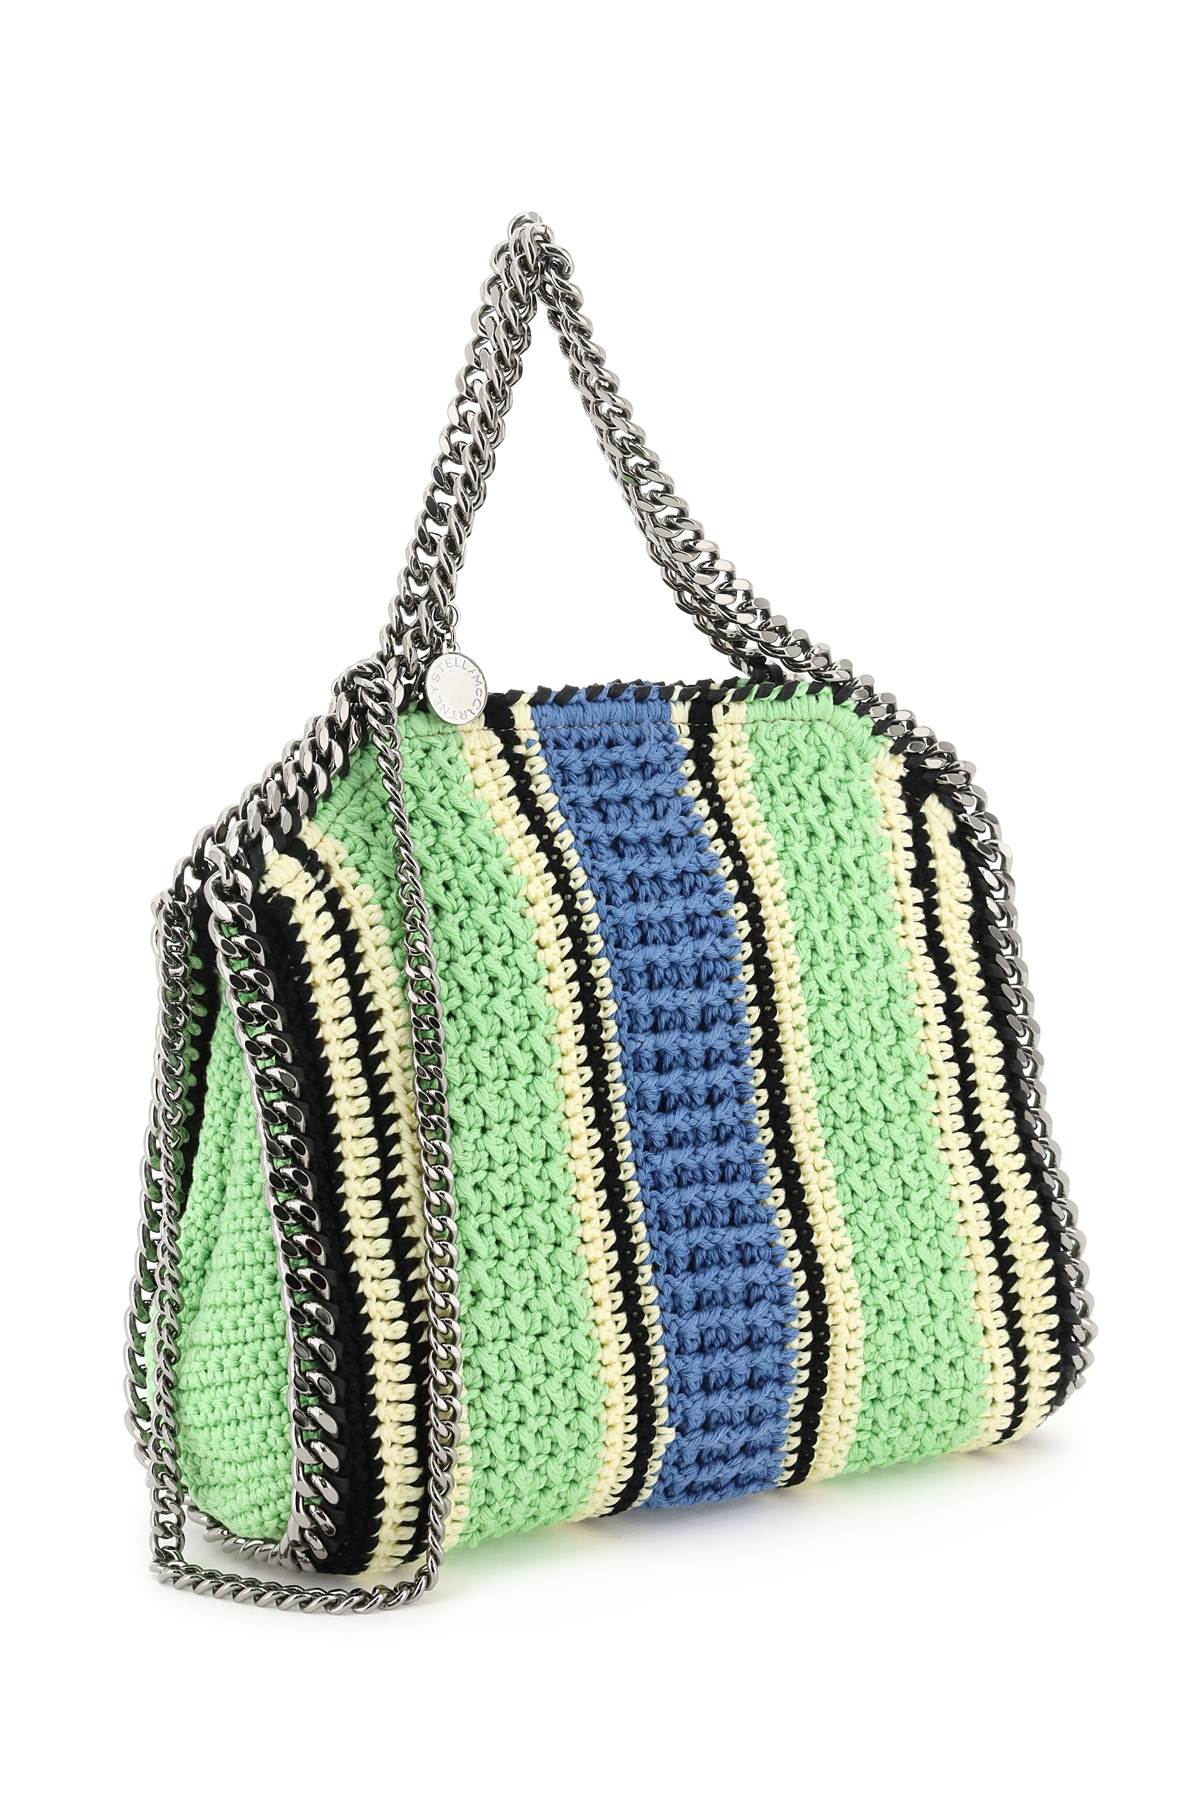 Stella Mc Cartney 'Falabella' Crochet Tote Bag   Giallo